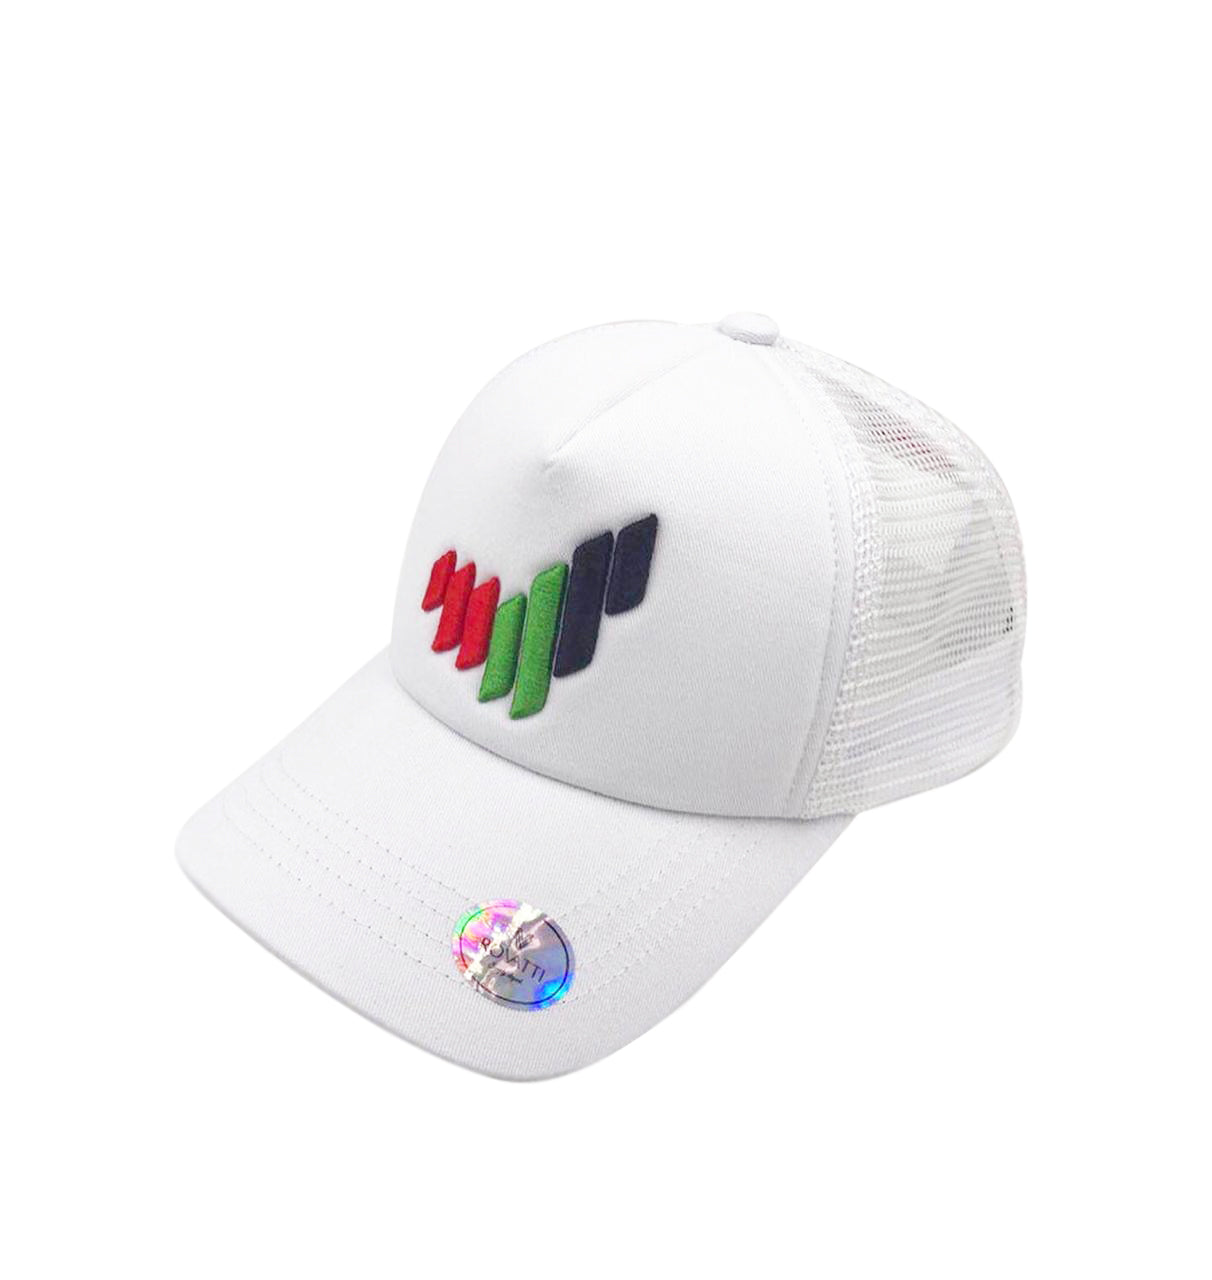 UAE New Logo Cap White | buy caps online | gifts for men & women